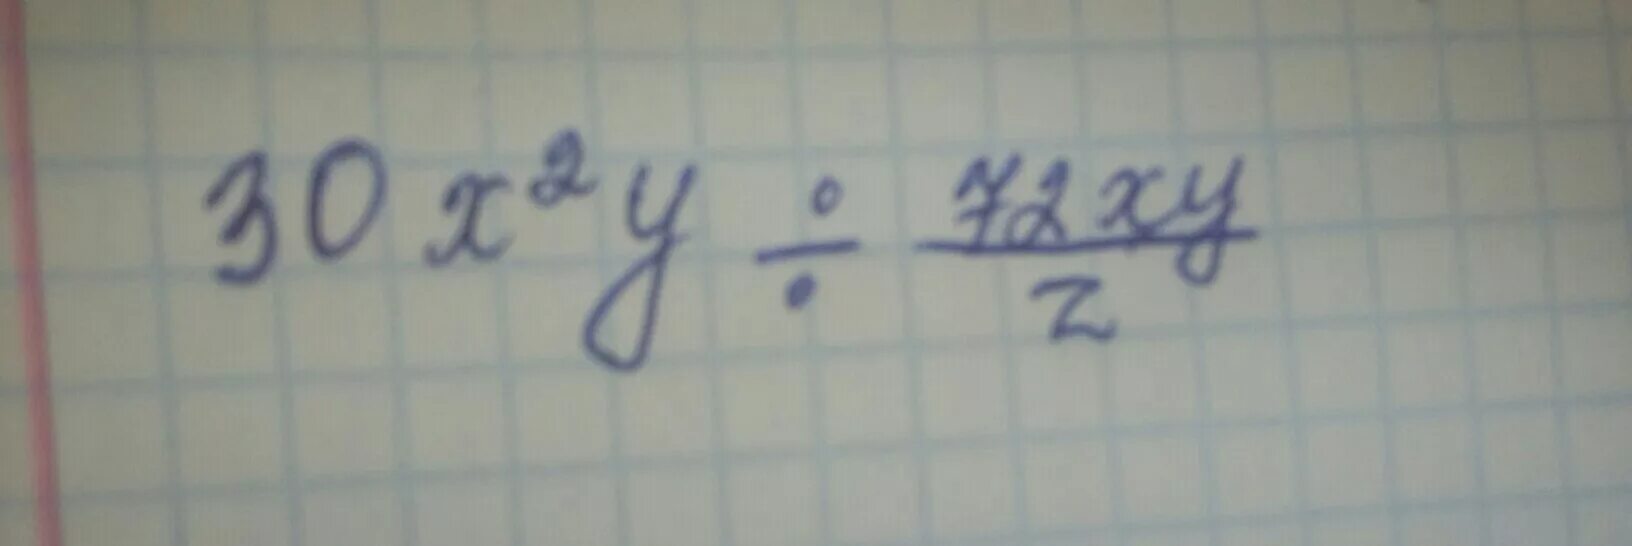 Z z div y. 30x2y 72xy/z. 30xy : 72xy/z. 30x2y:72xy/z решить. Представьте в виде дроби 30x2y/72xy/z.